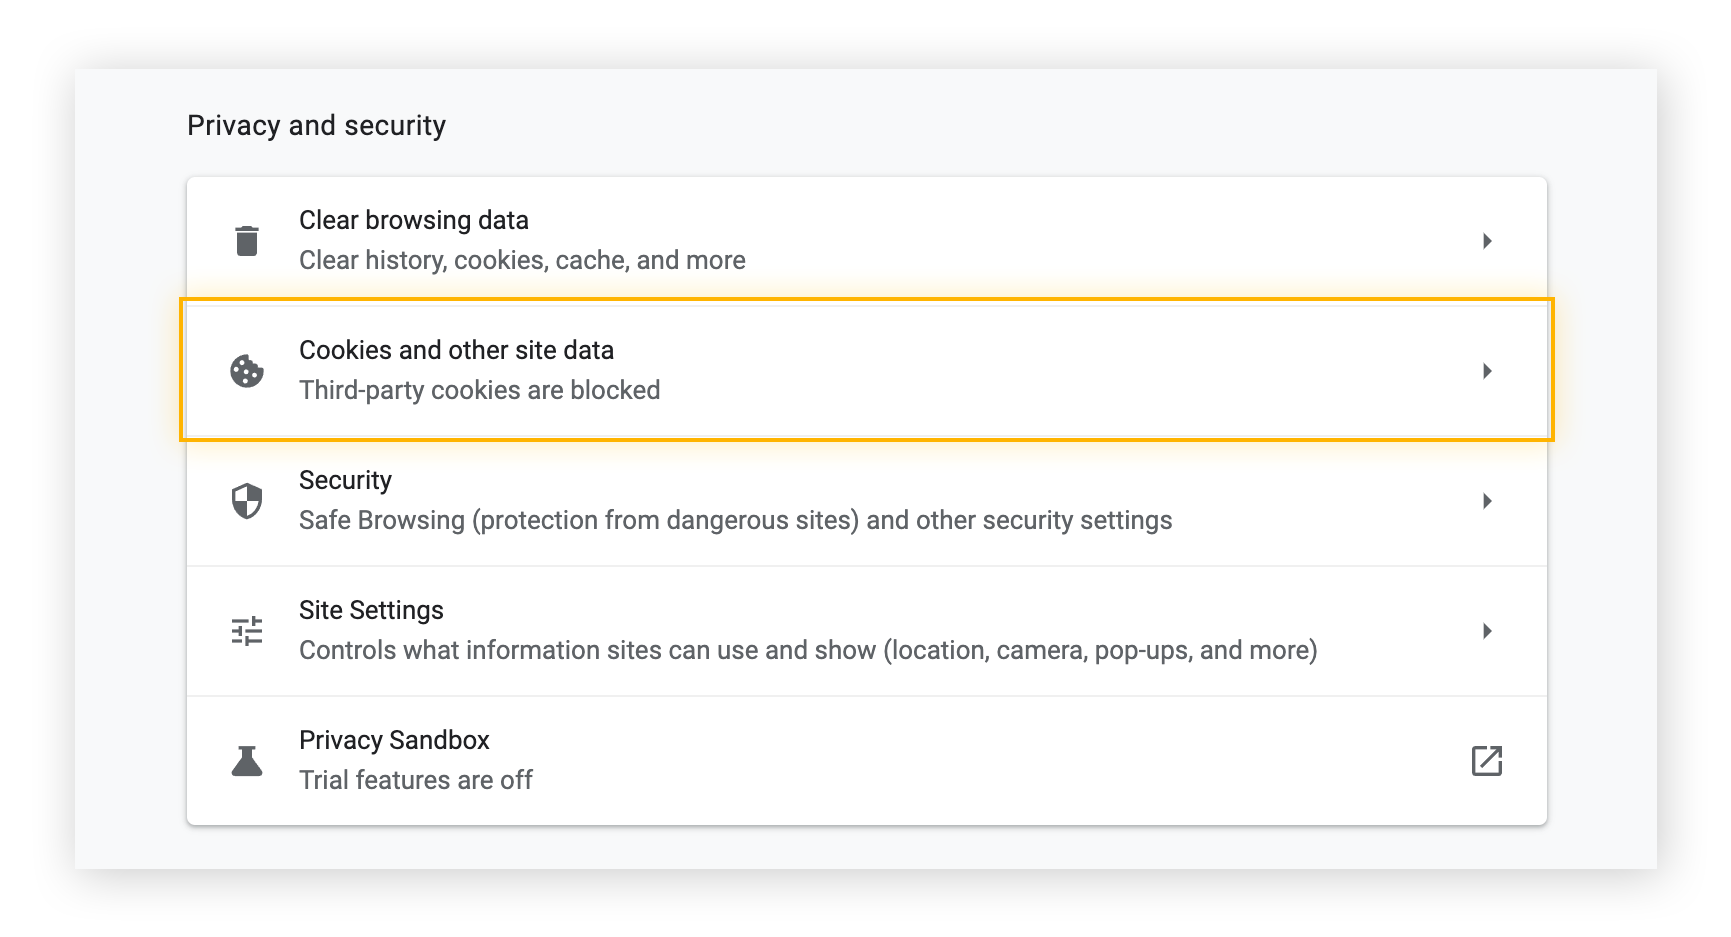 La configuración de privacidad y seguridad en Chrome